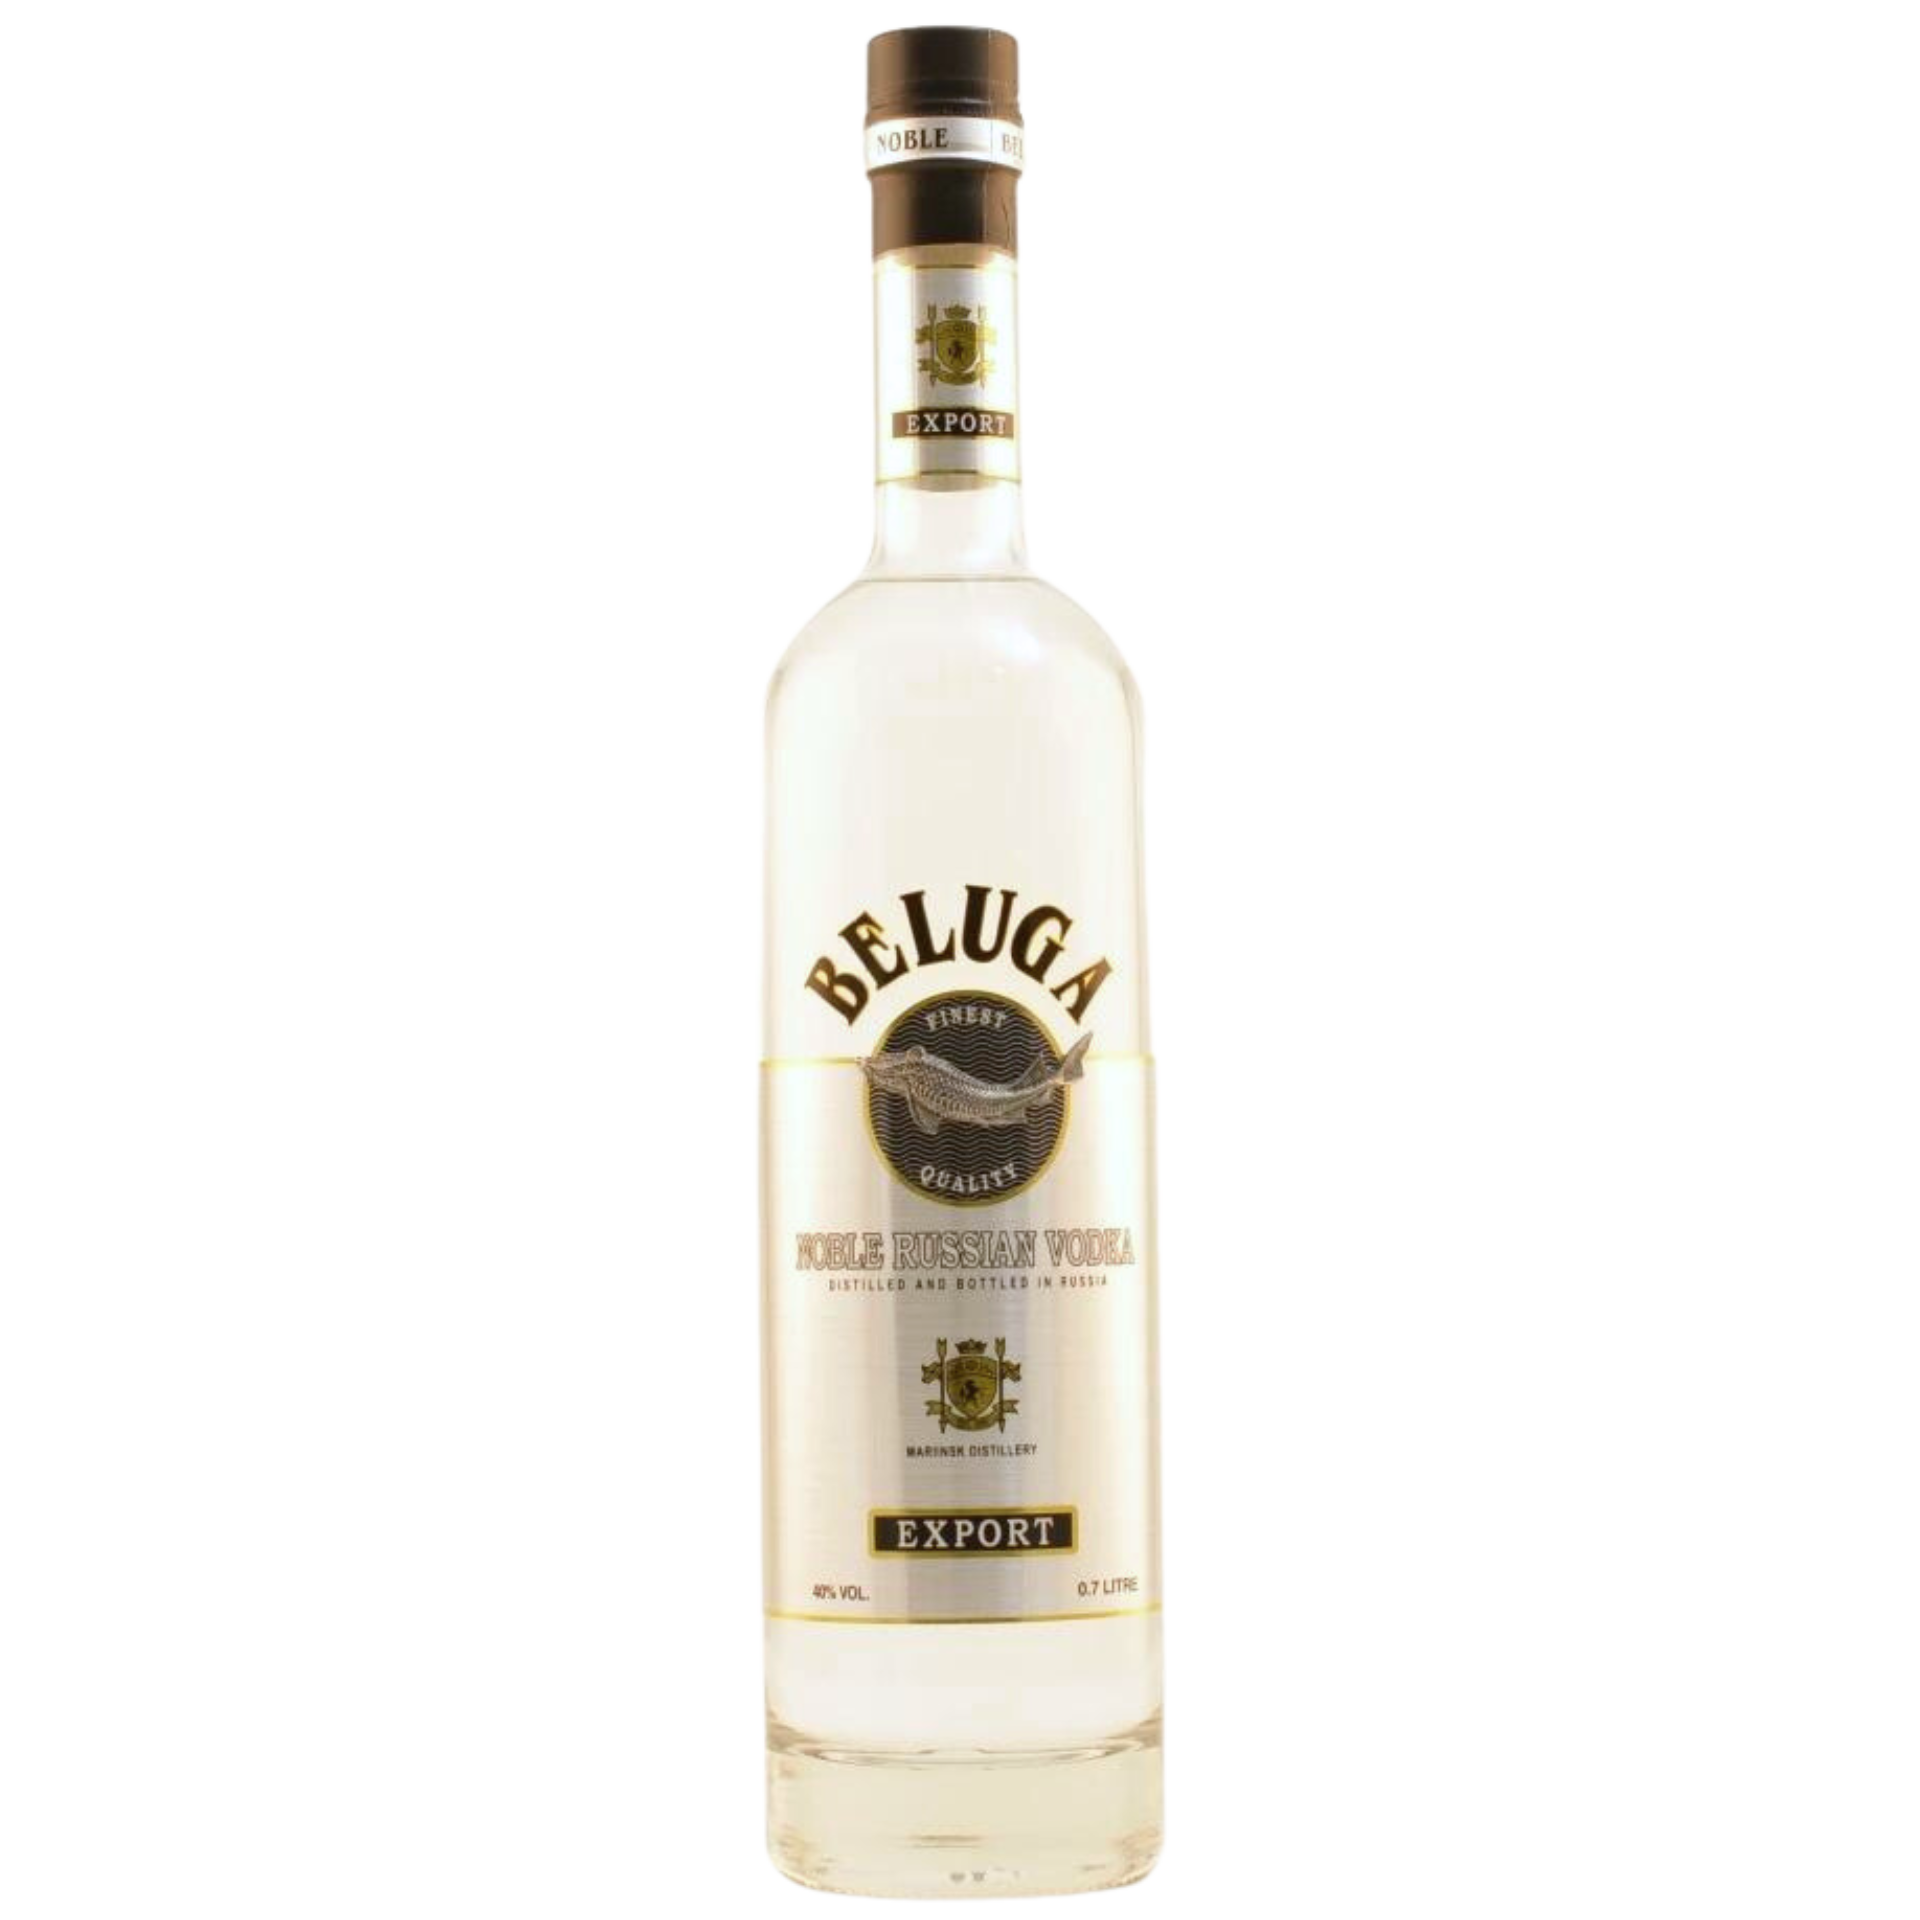 Beluga Noble Vodka 40% 0,7l